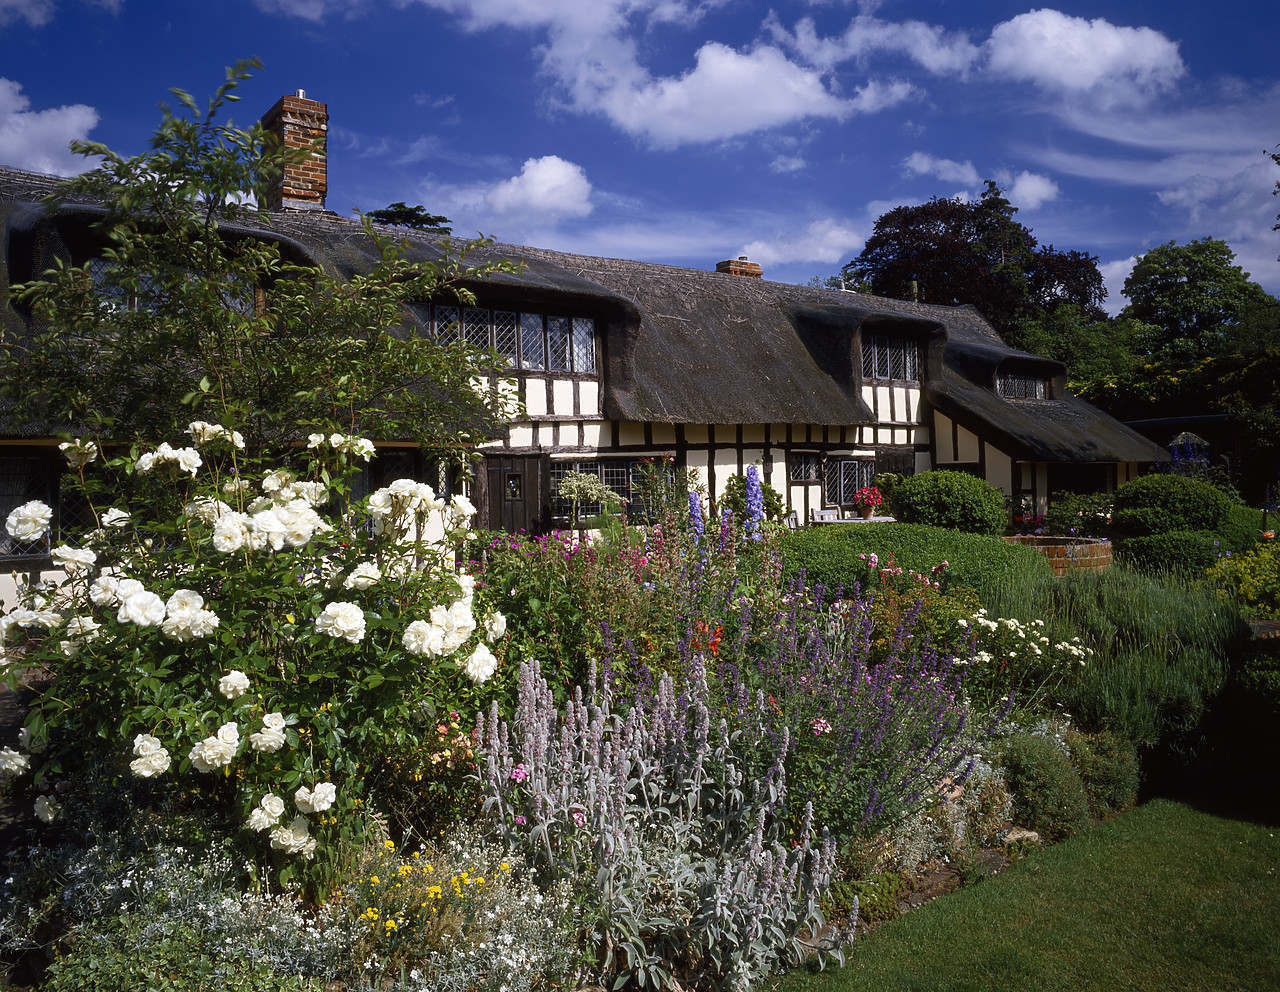 #944725-1 - Thatched Cottage & Garden, Dedham, Essex, England